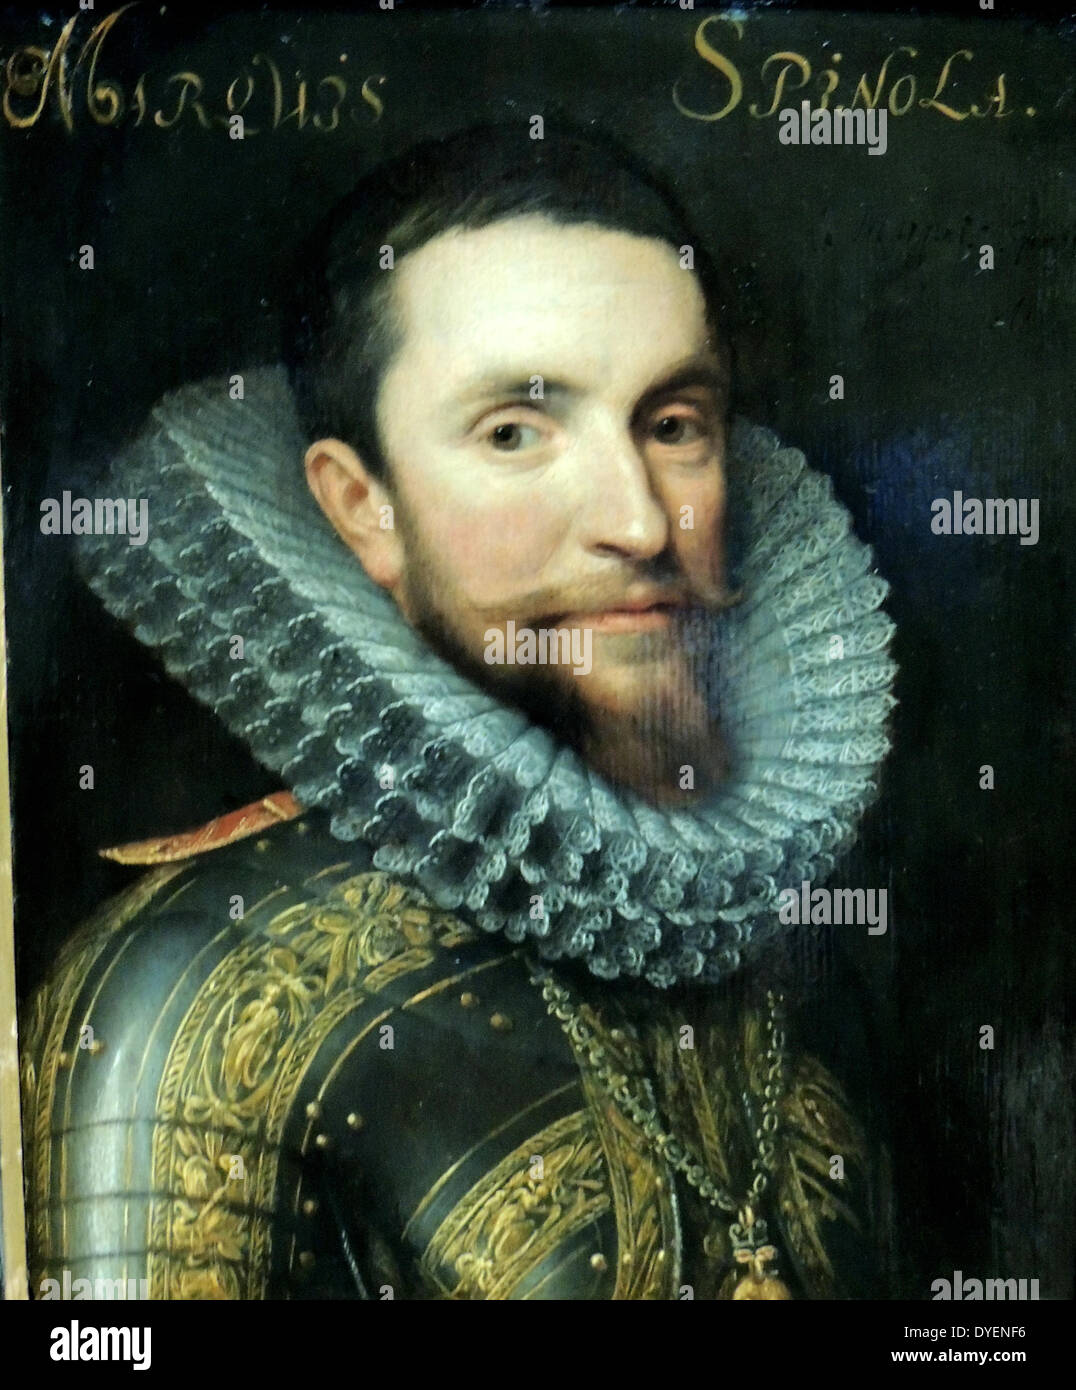 Ritratto di Maurits (1567-1625), il principe di Orange., da officina di Michiel Jansz. van Mierevelt (1567, Delft - 1641). Data Foto Stock